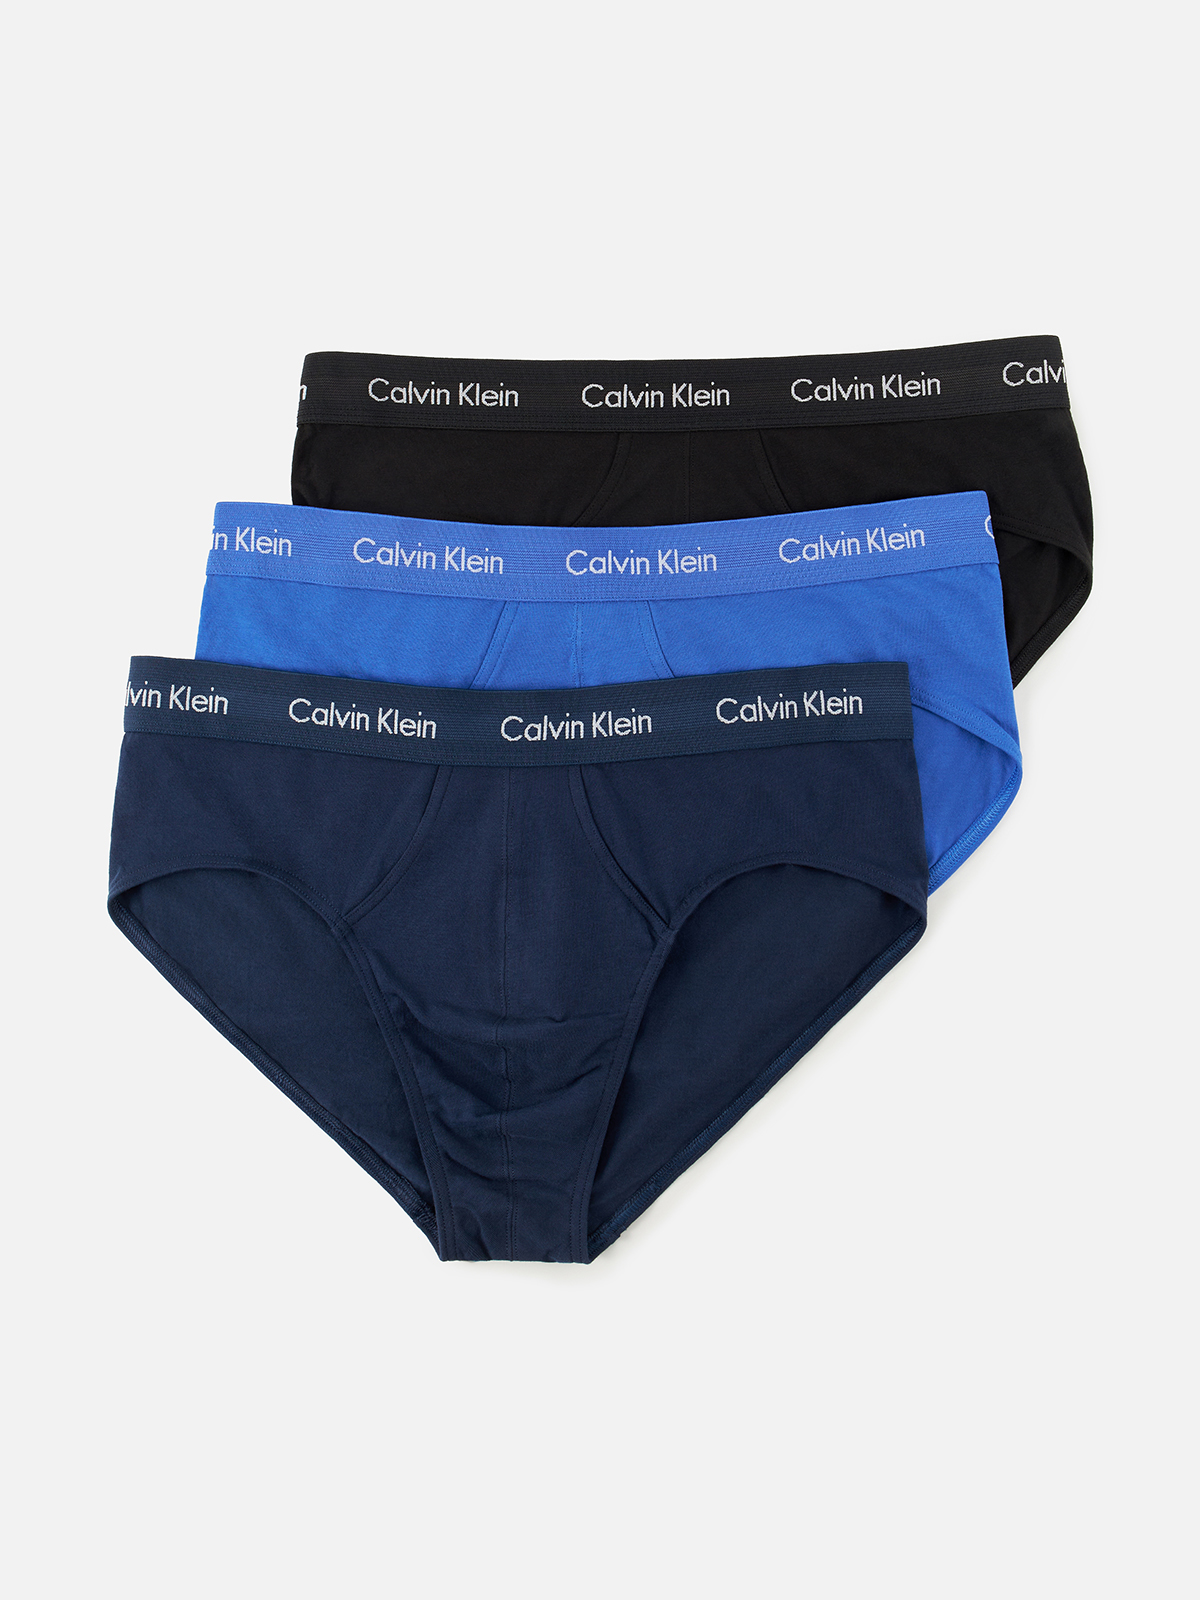 Комплект трусов мужских Calvin Klein Underwear 0000U2661G голубых, синих, черных XL